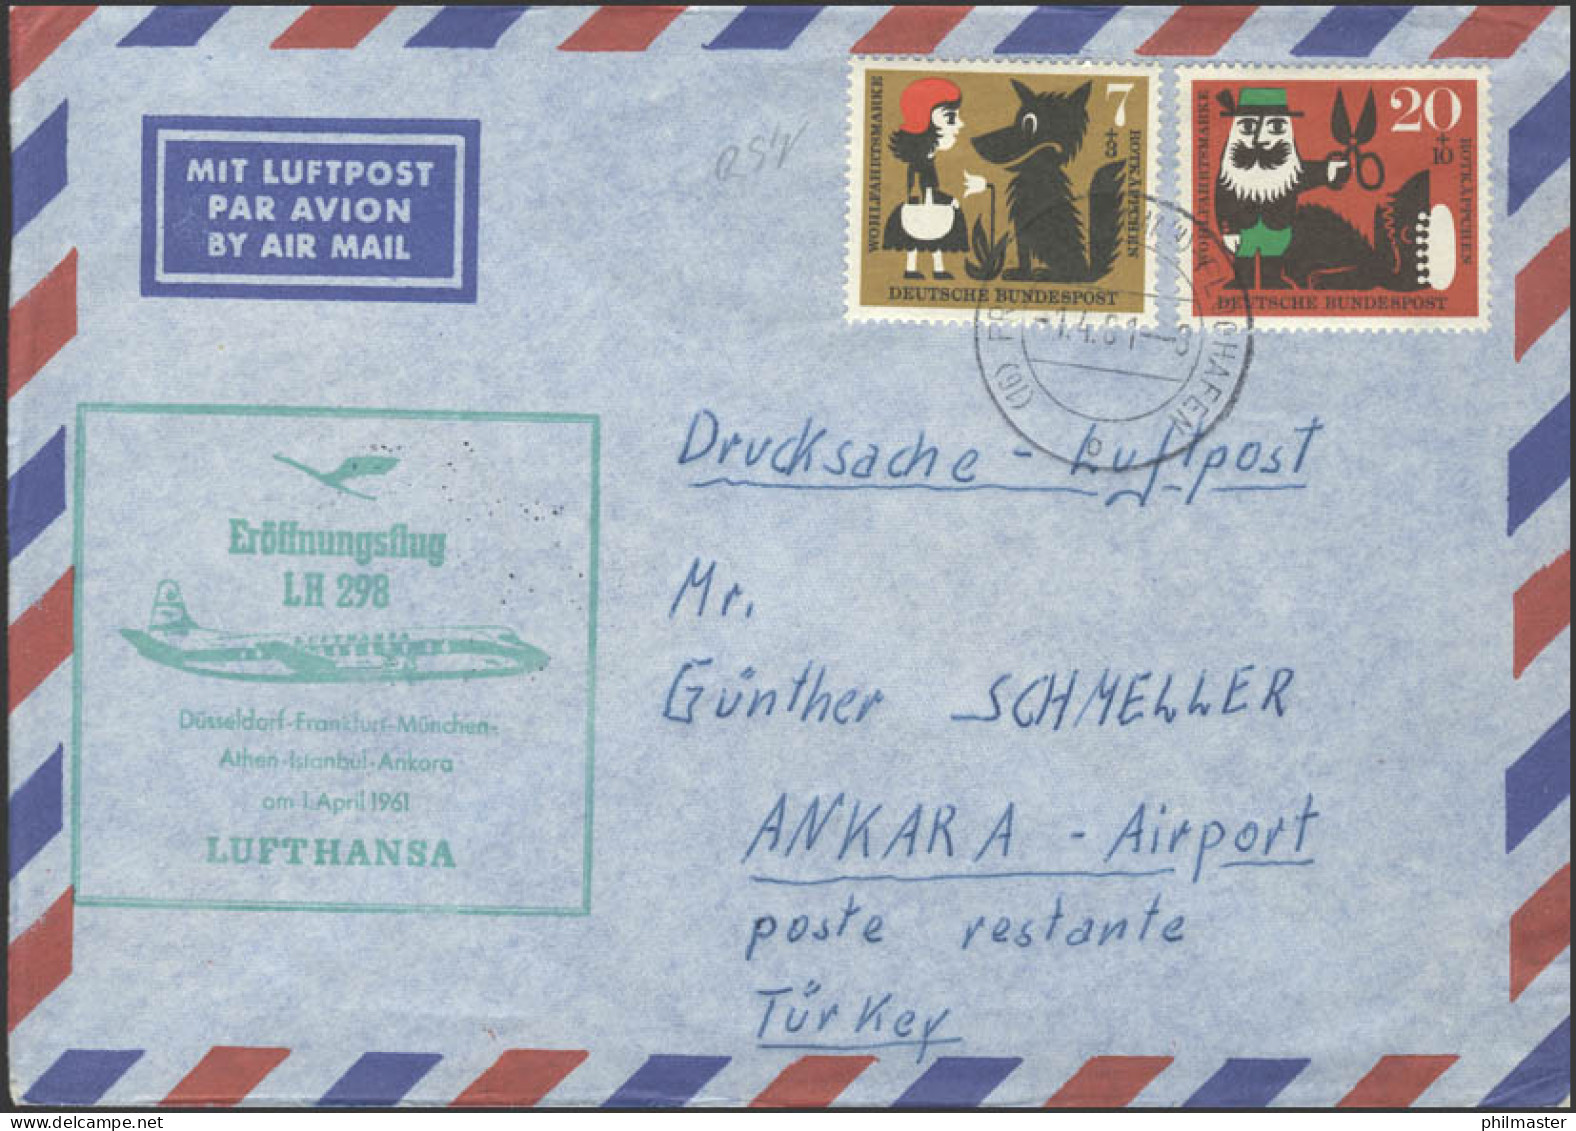 Eröffnungsflug LH 298 Düsseldorf-Frankfurt-Ankara Am 01.04.1961 - Andere (Lucht)